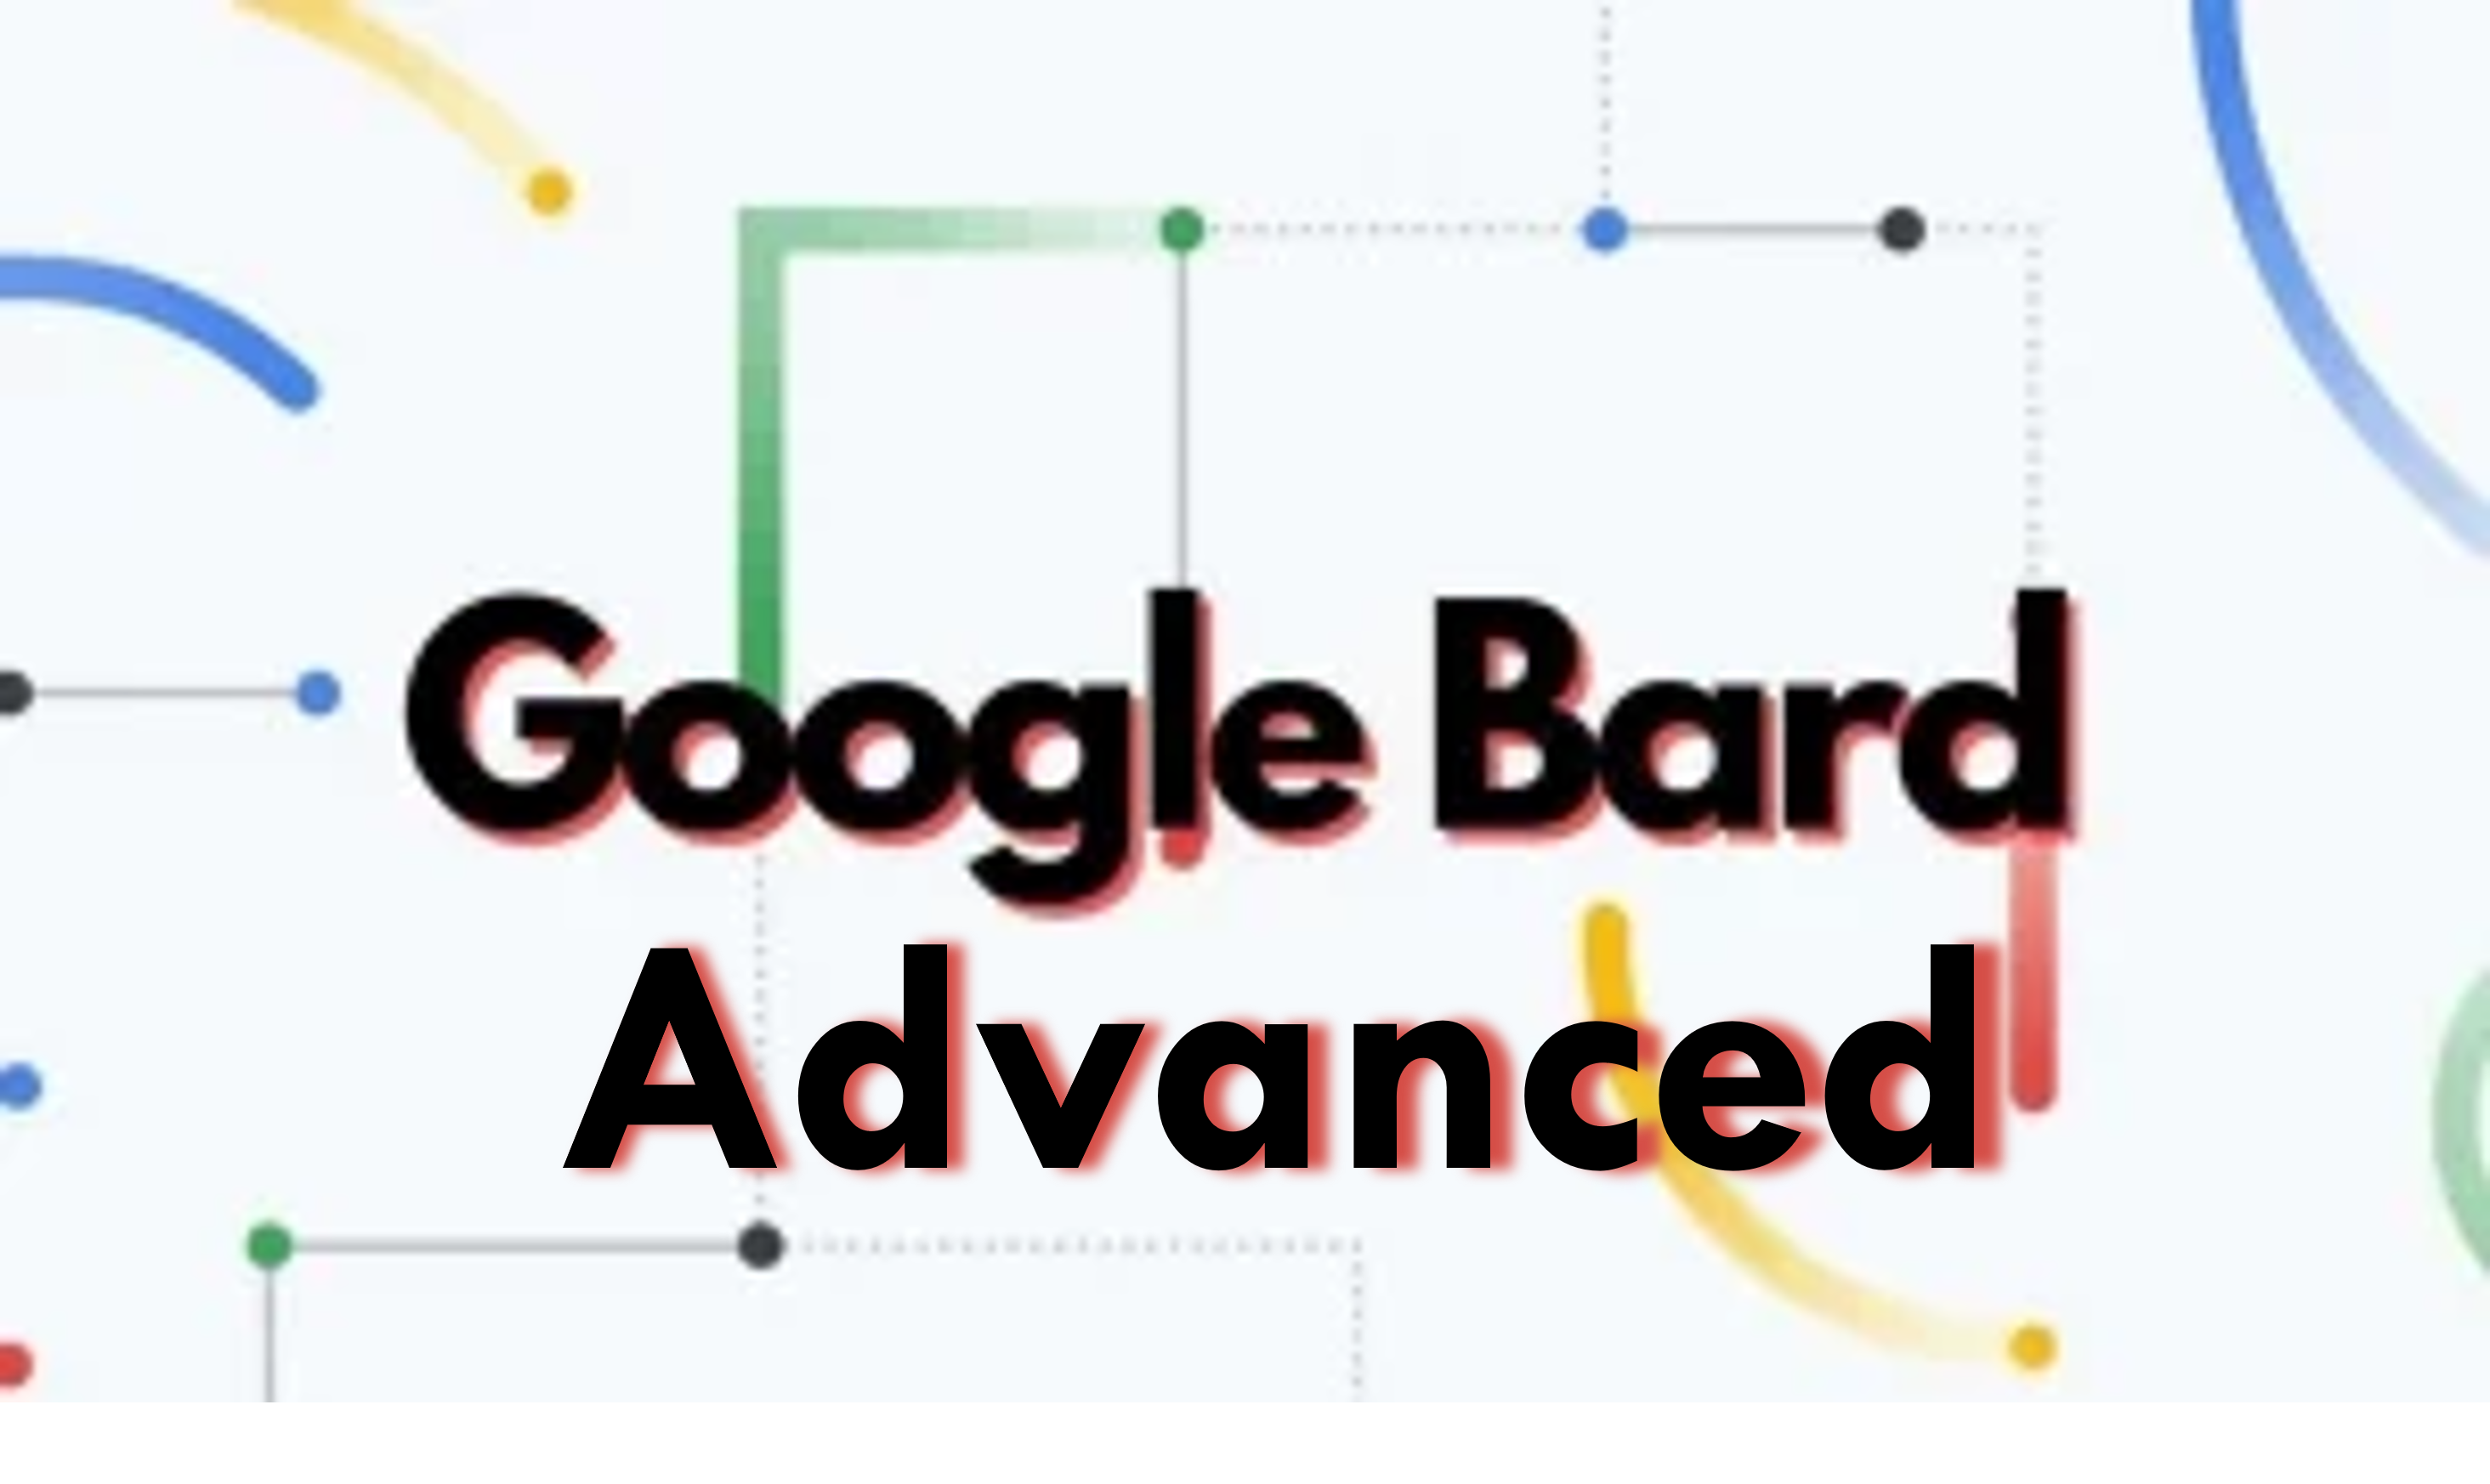 Google Bard Advanced का निःशुल्क 3 महीने का परीक्षण प्राप्त करें; एआई चैटबॉट्स के भविष्य का अनुभव करें